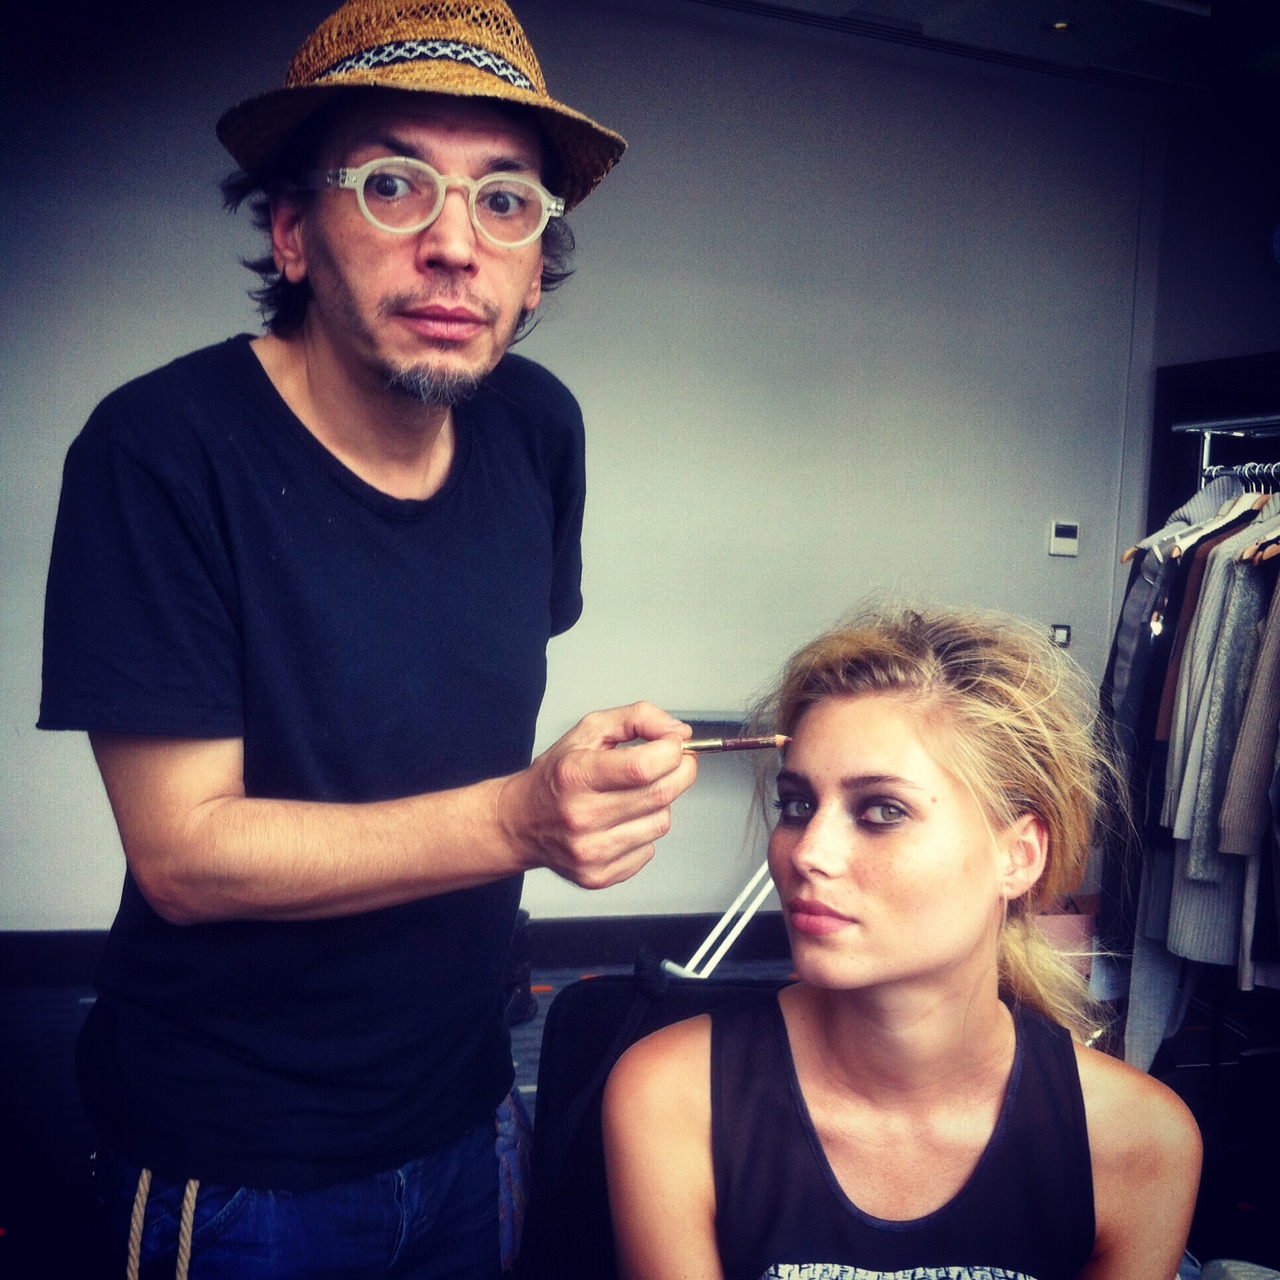 Makeup Artist Topolino and Vika Falileeva backstage @ Benjamin Kanarek's instagram